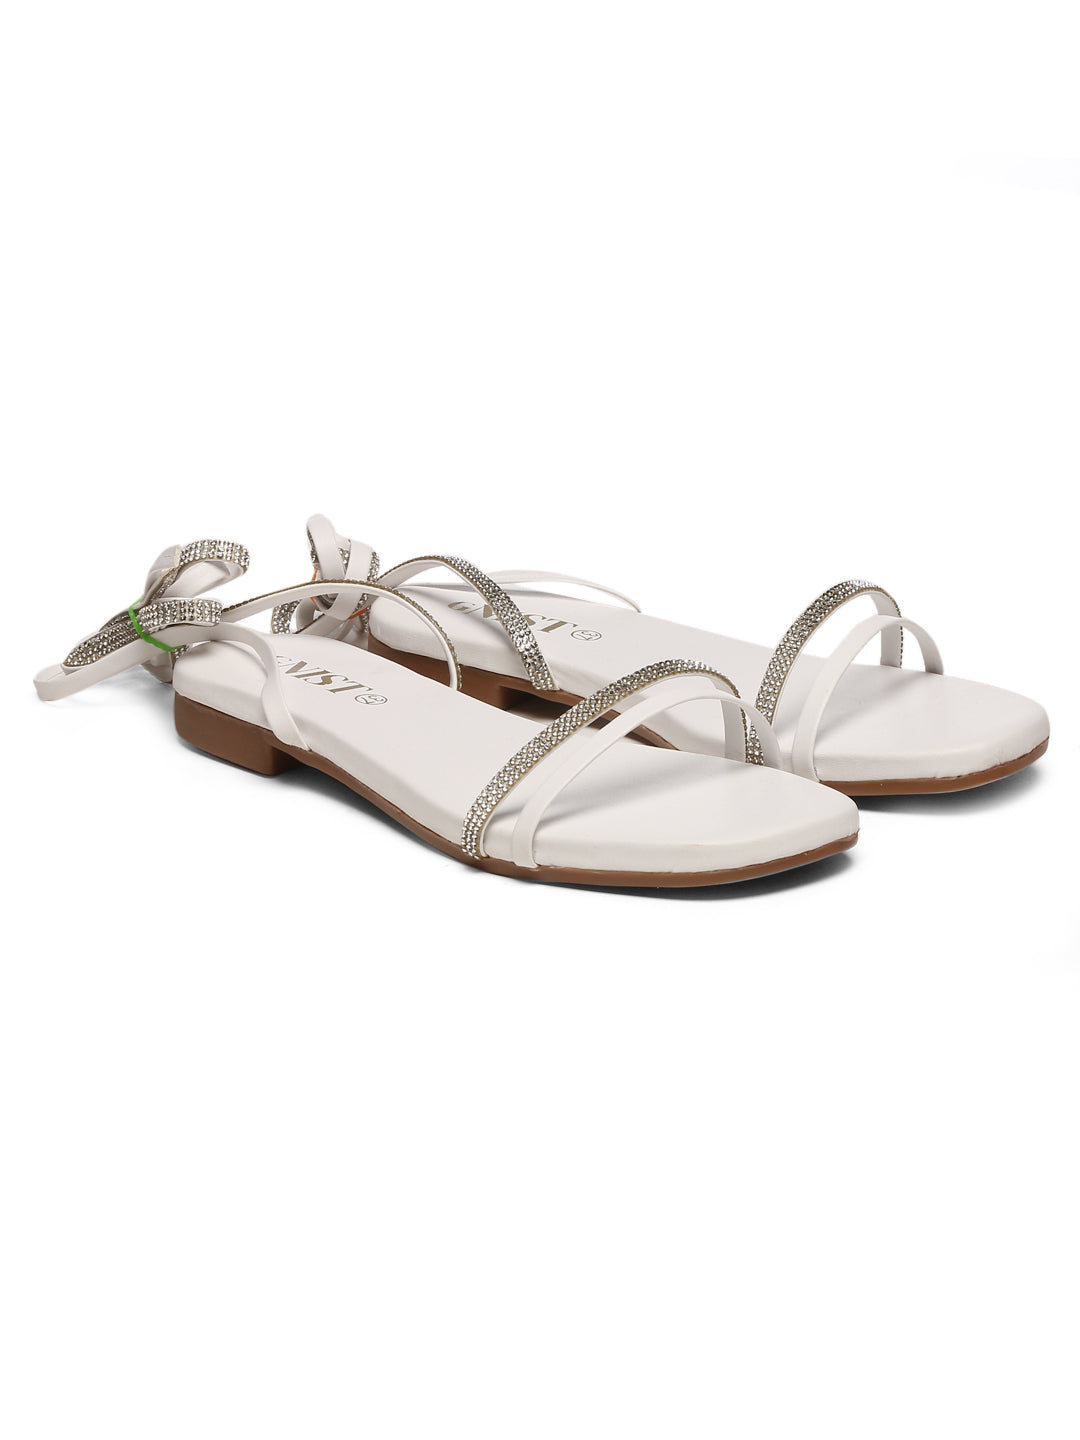 GNIST White Embellished Tie up Flat Sandal